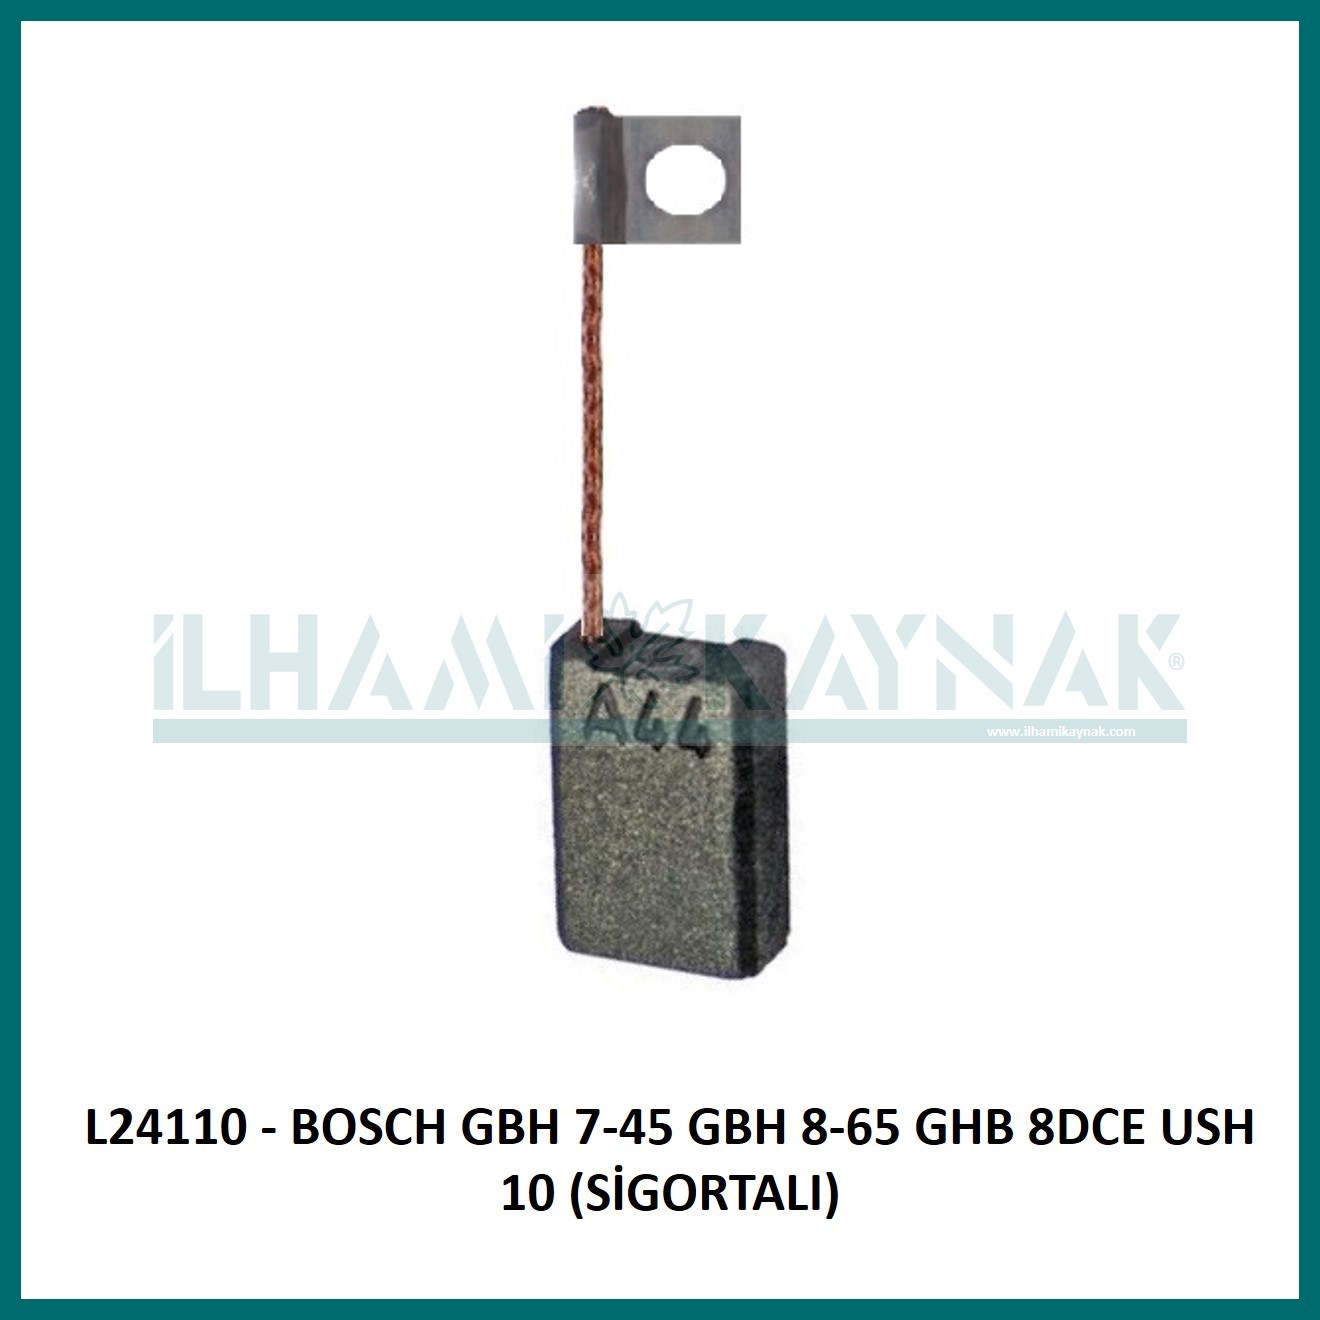 L24110 - BOSCH GBH 7-45 GBH 8-65 GHB 8DCE USH 10 (SİGORTALI) - 6.3*12.3*18 mm - Minimum Satın Alım: 10 Adet